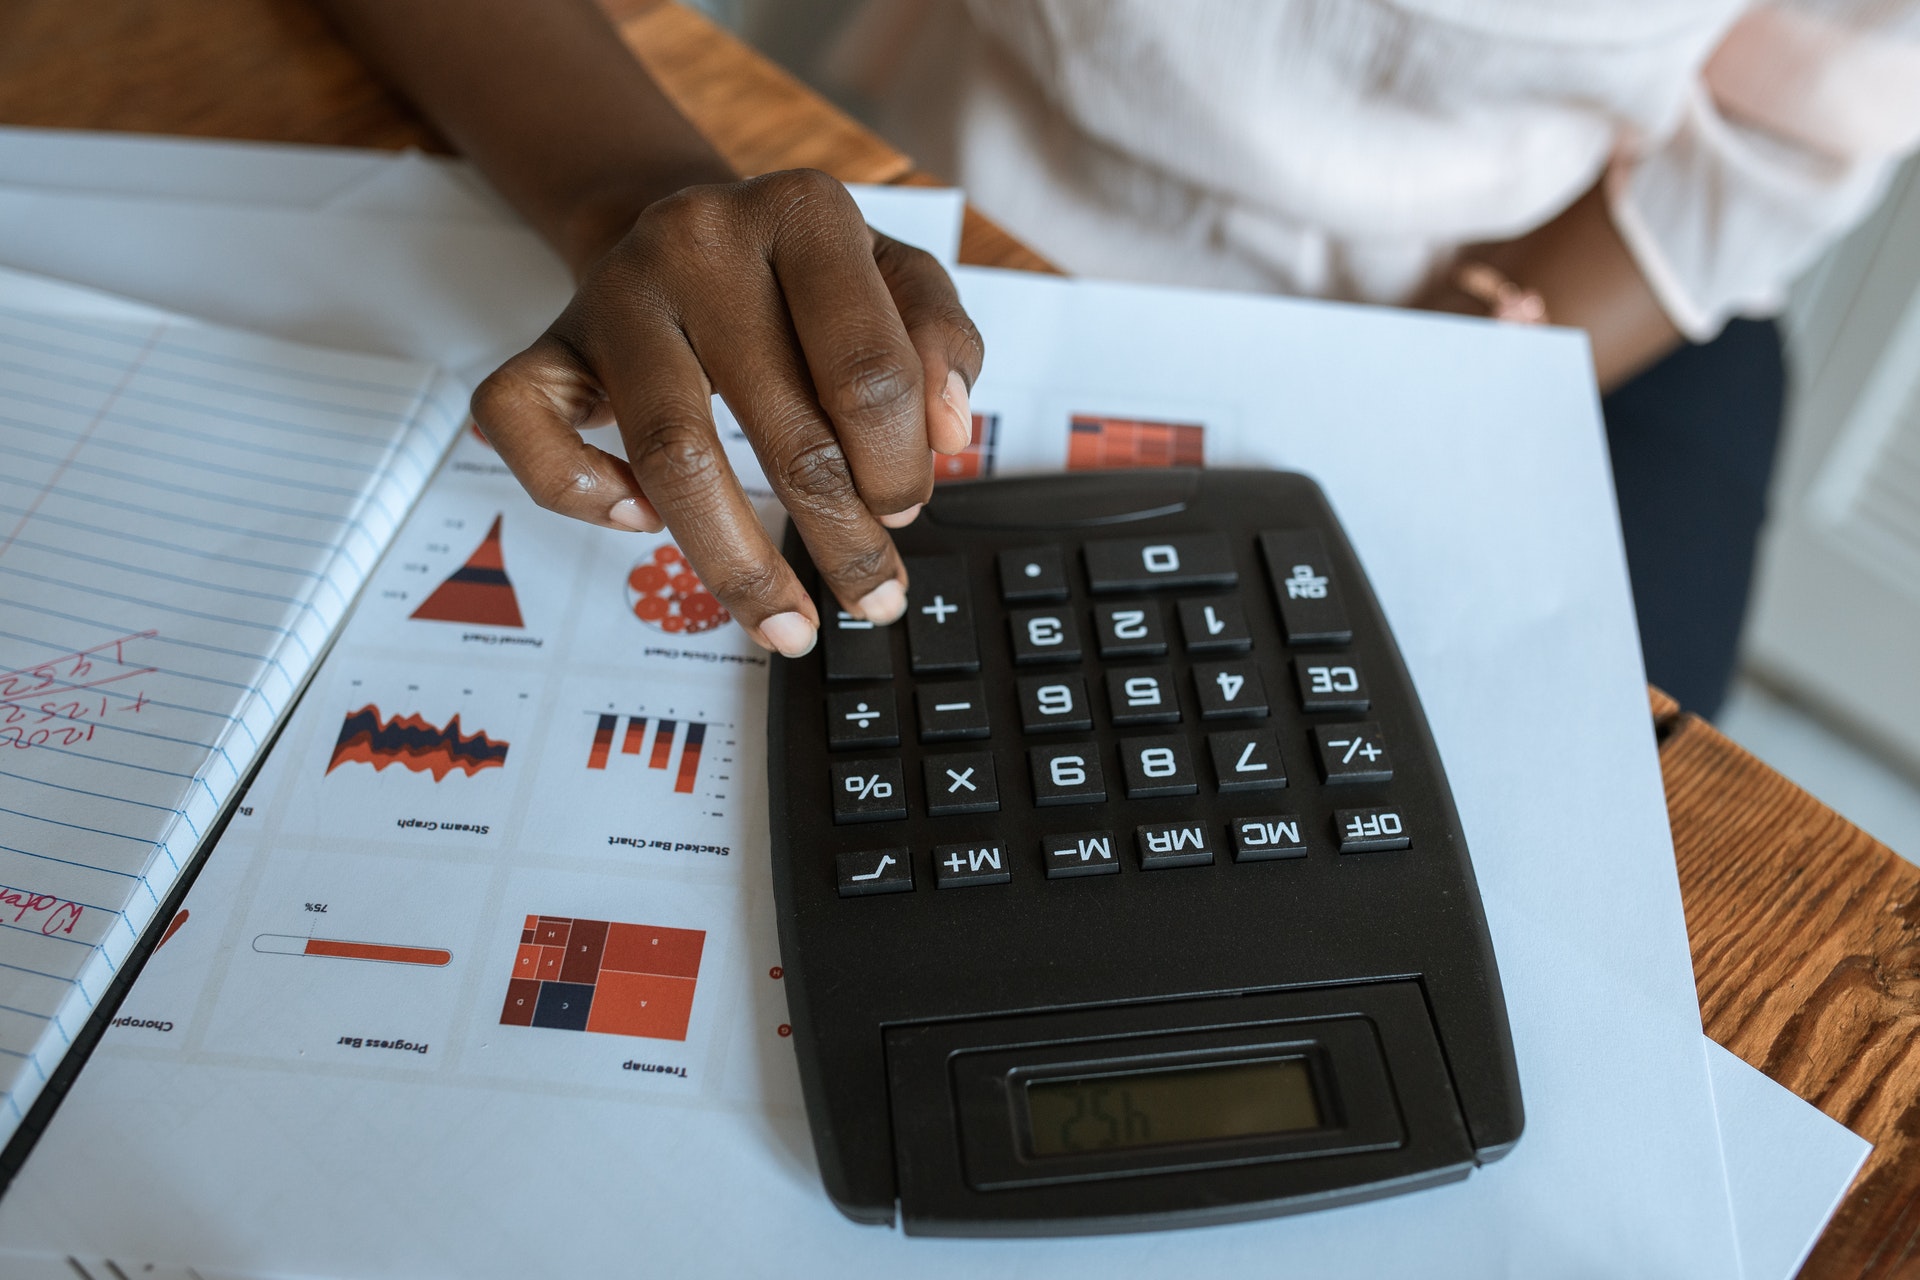 gestão financeira - pessoa utilizando calculadora em uma mesa com papéis contendo gráficos e dados financeiros